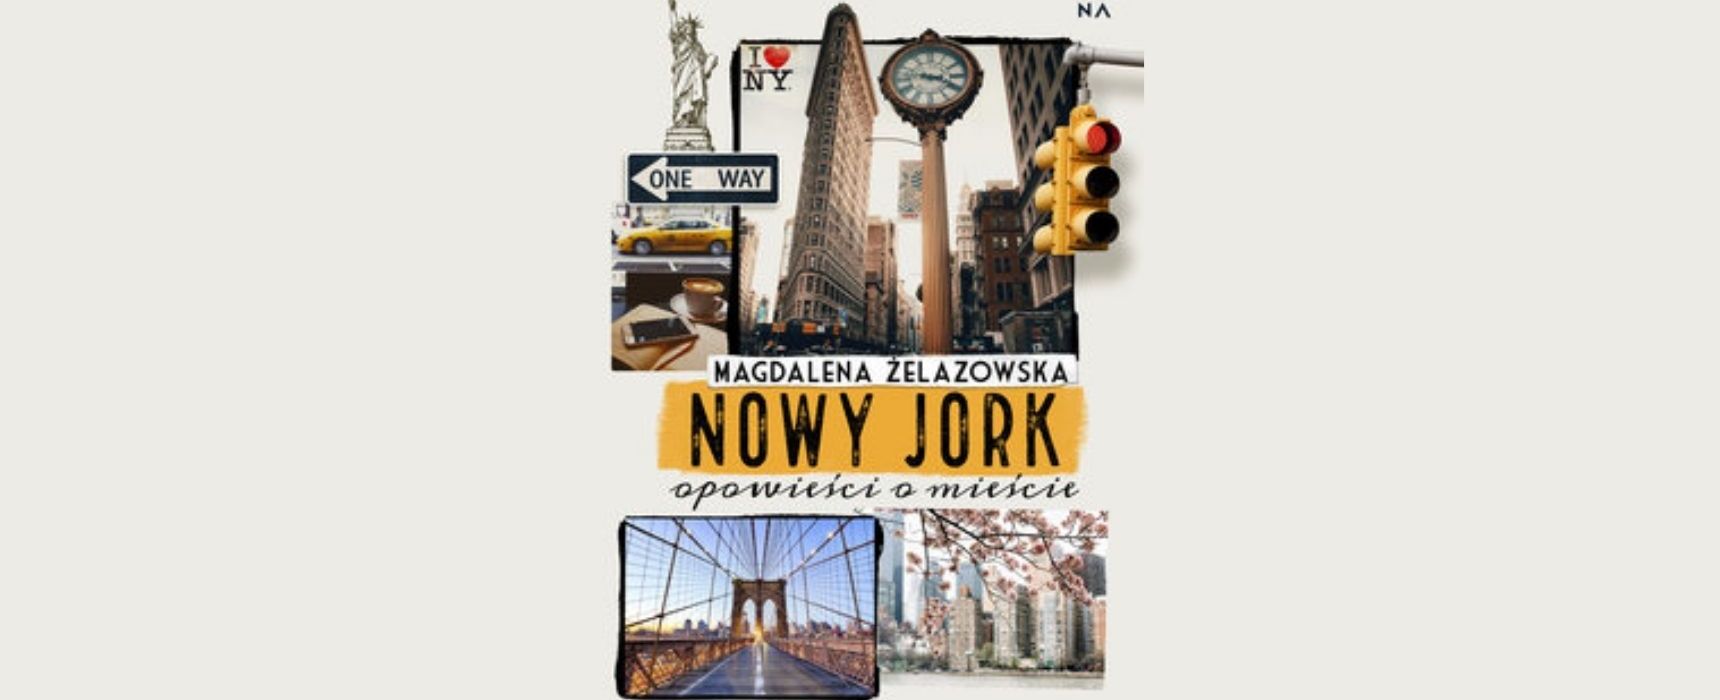 [pon. 11:00] “Nowy Jork - opowieści o mieście” / Magdalena Żelazowska